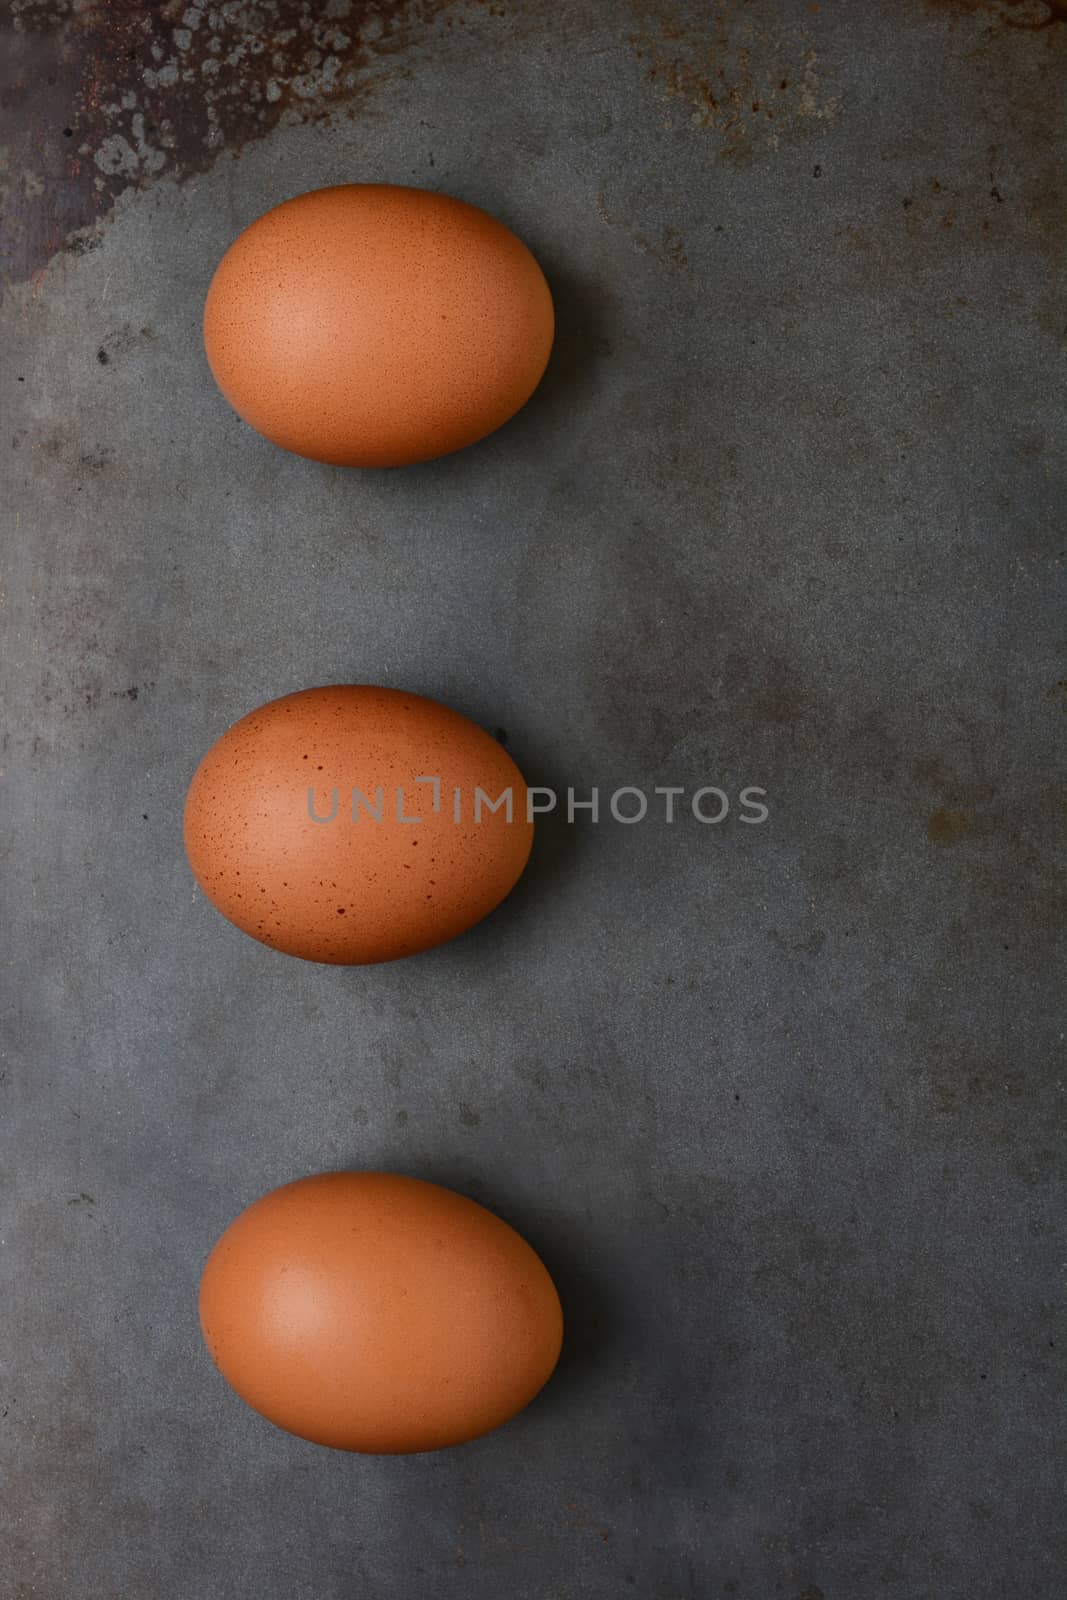 Brwon Eggs on Baking Sheet by sCukrov